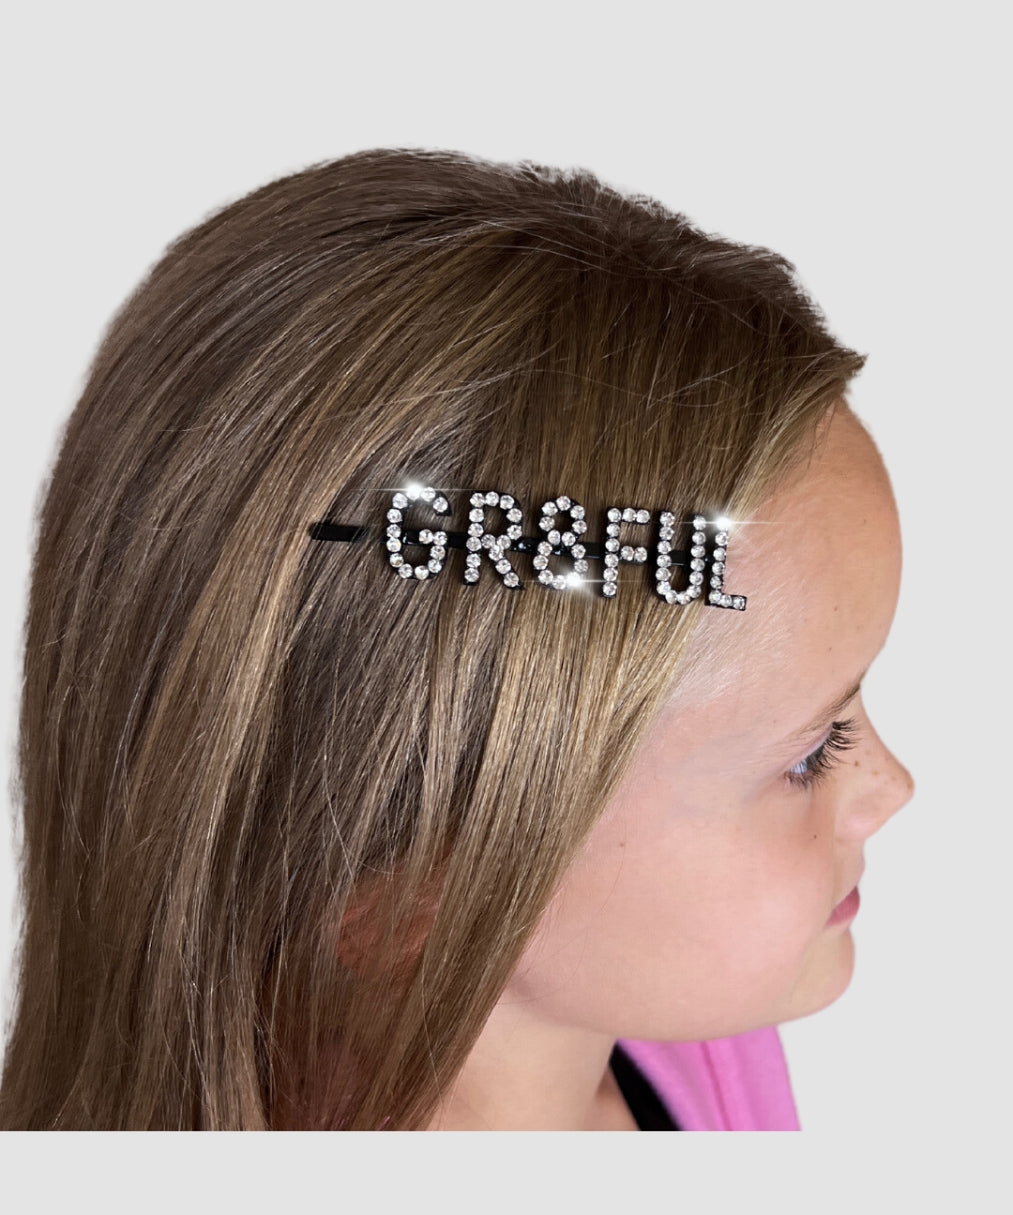 gr8ful® Hair Clip for Women & Girls